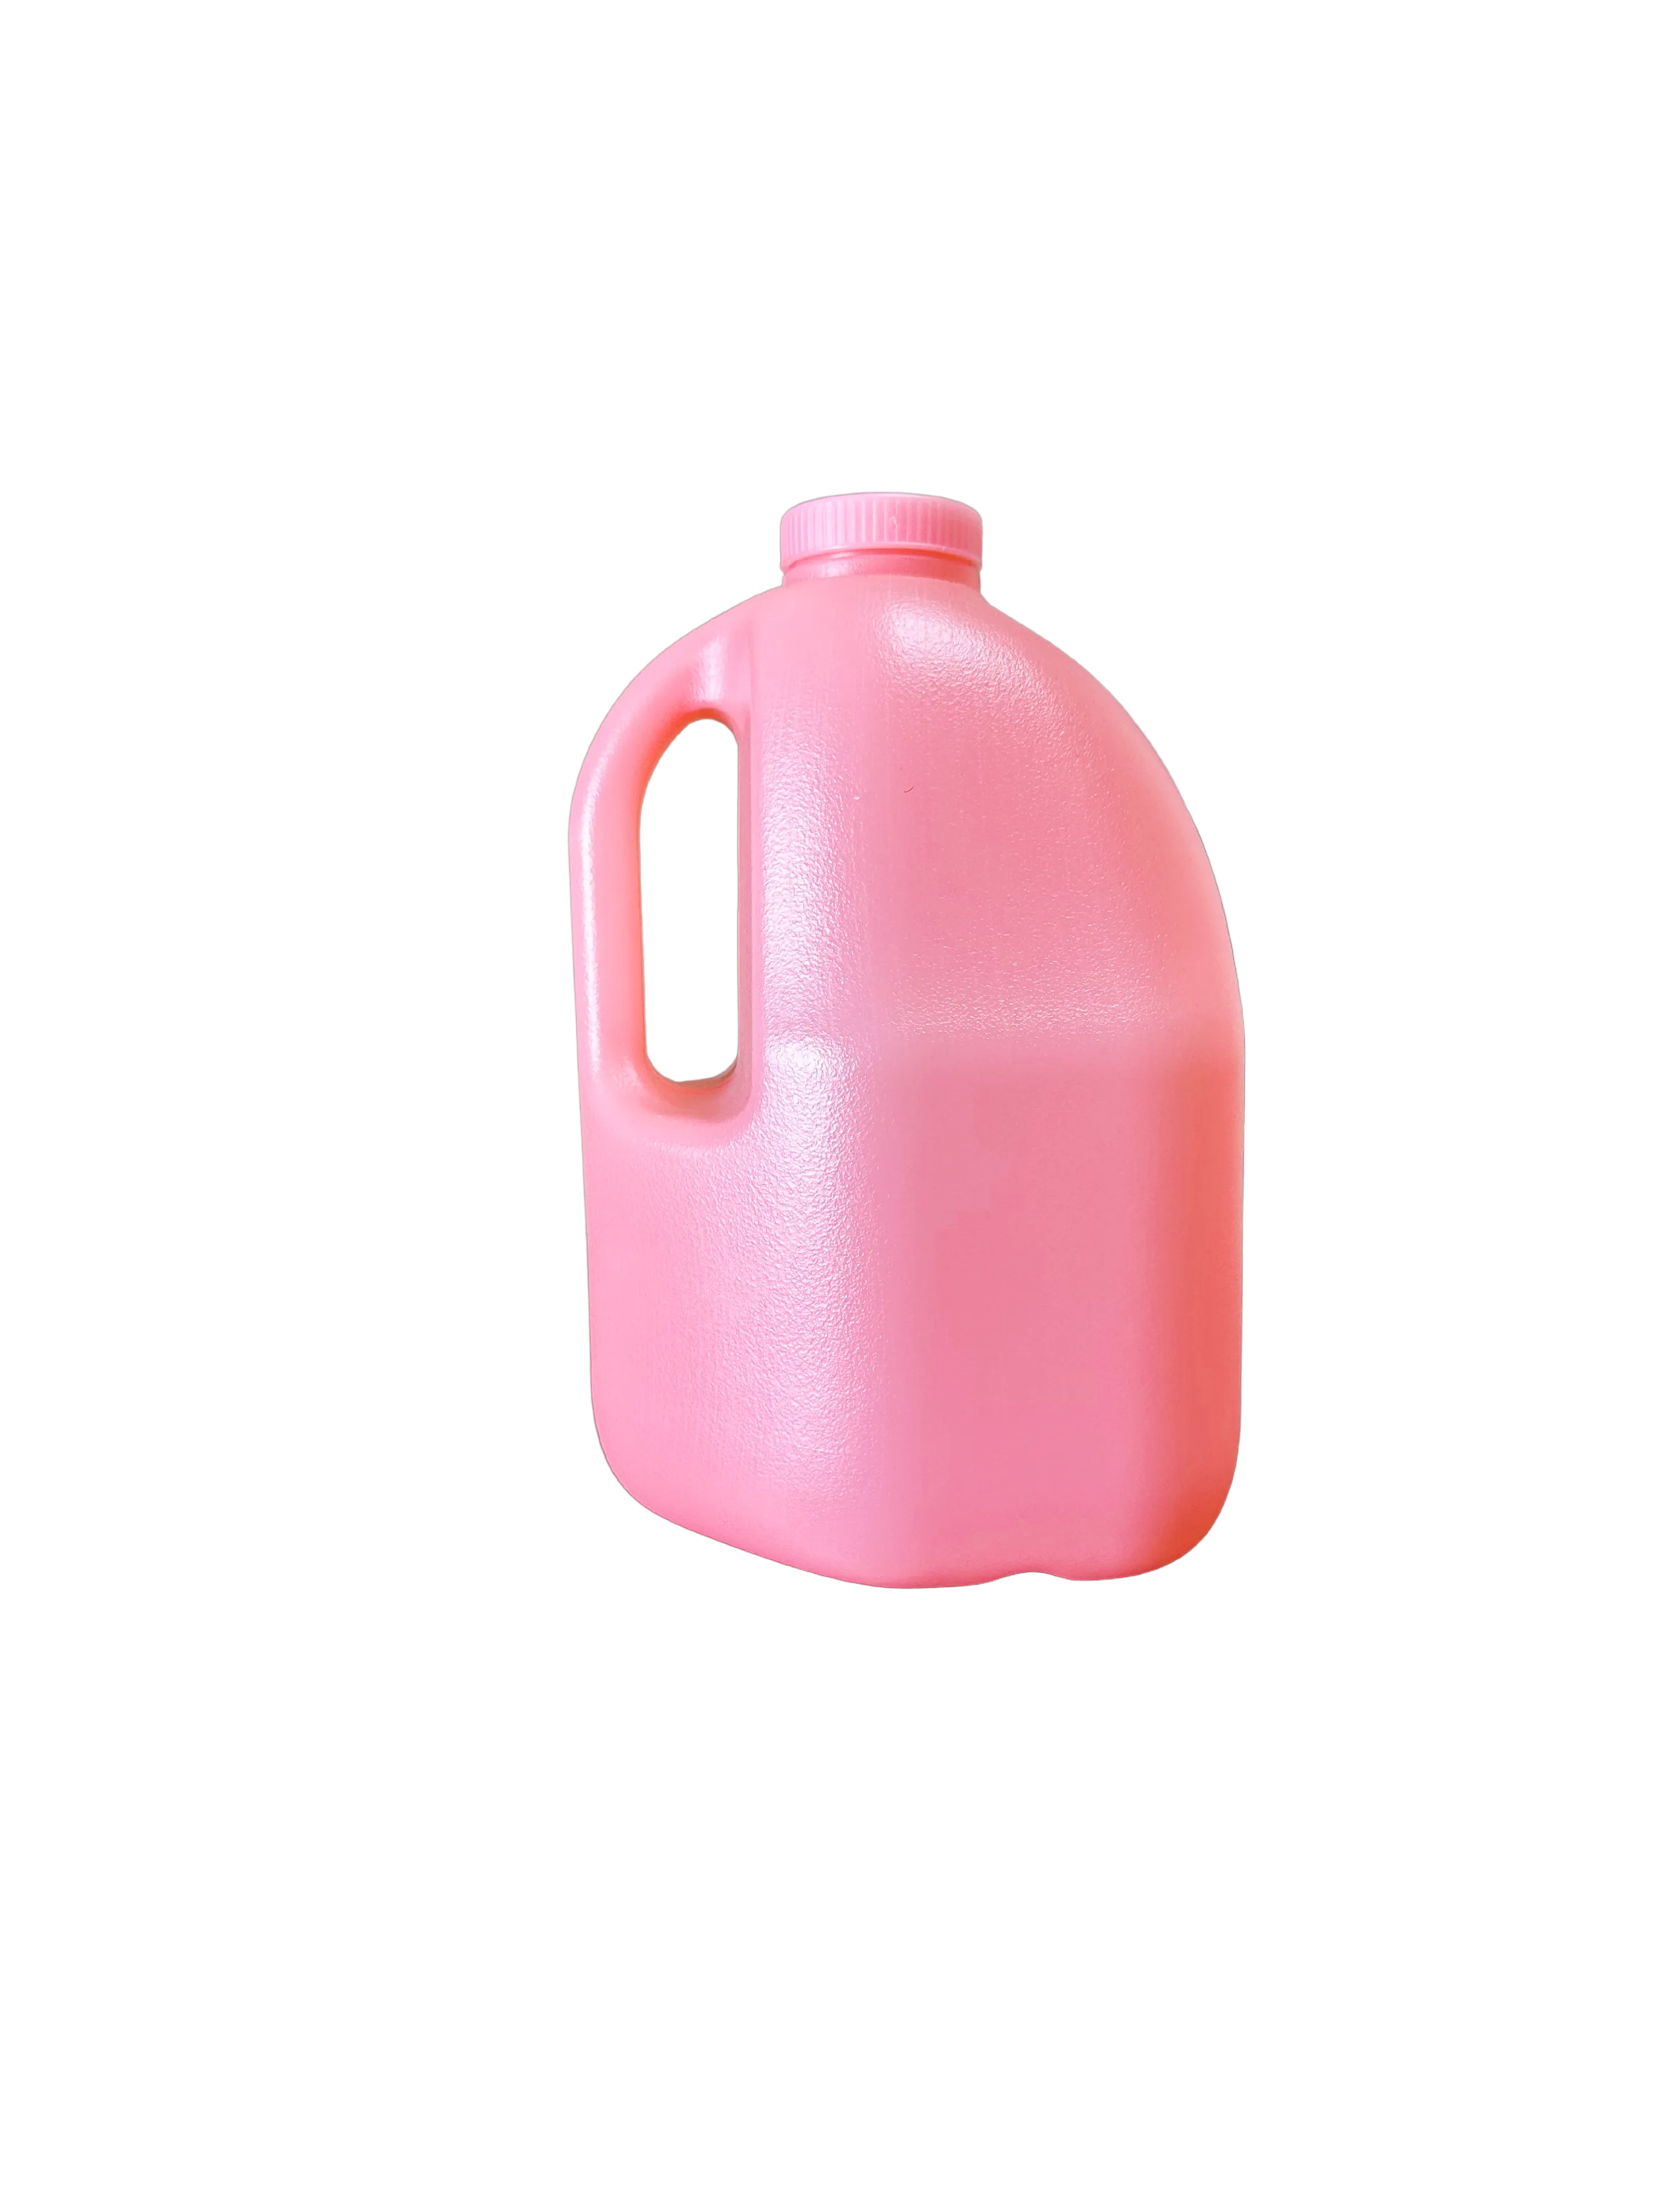 #jug color_Pink